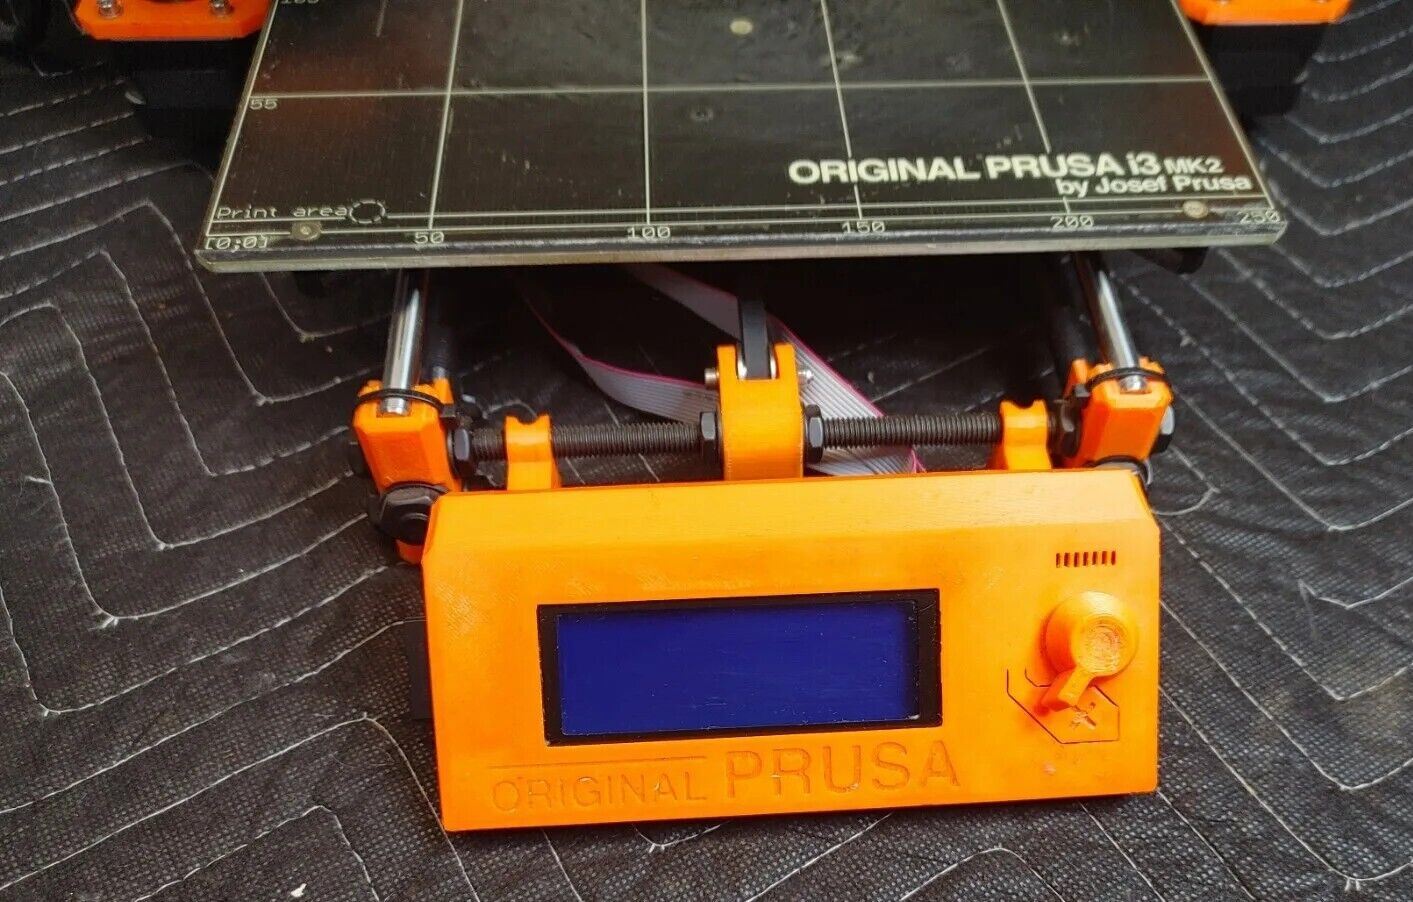 Prusa i3 Mk2s 3D Printer